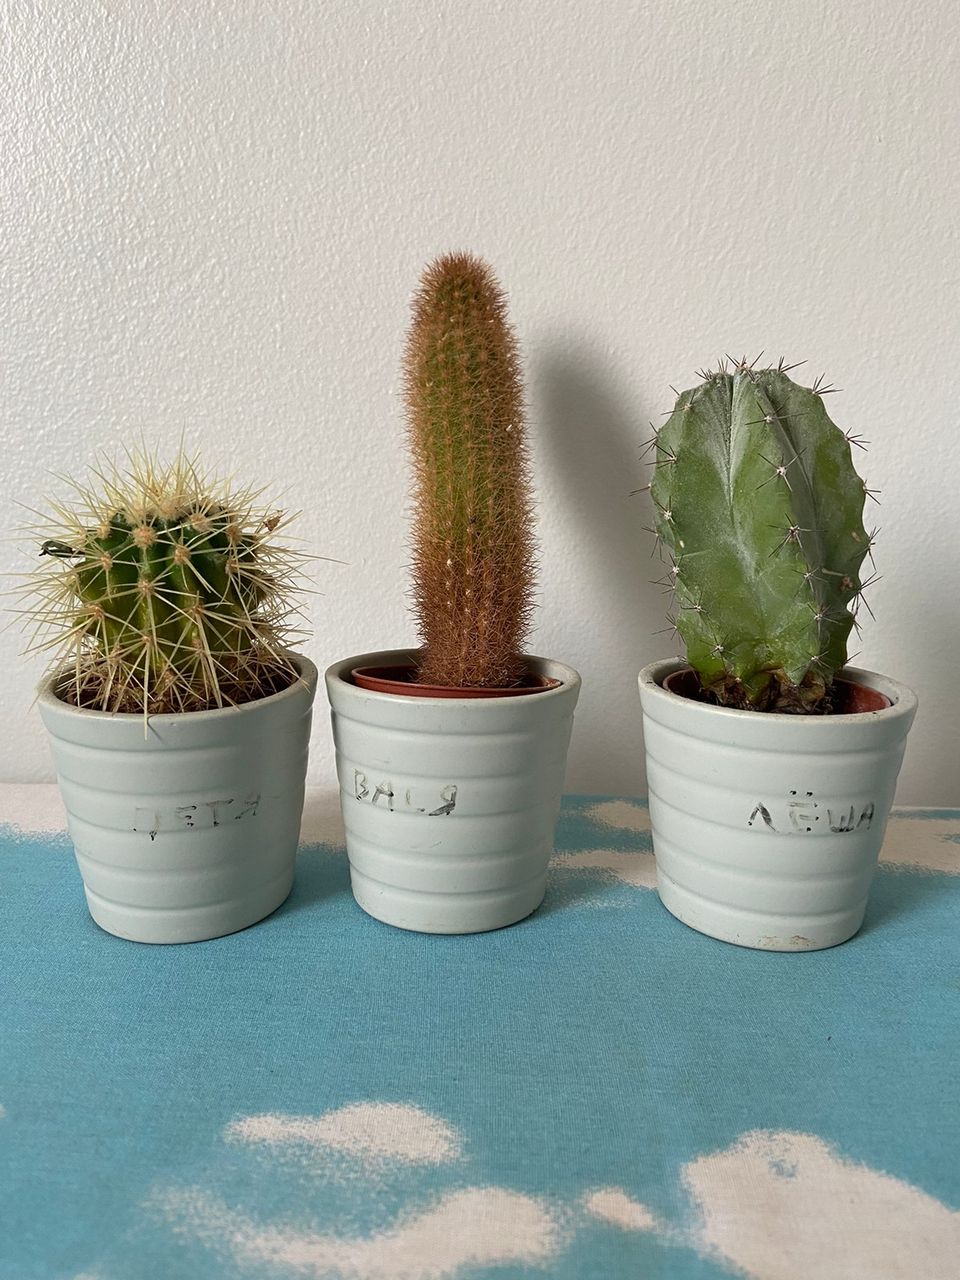 Kolme pientä kasvia